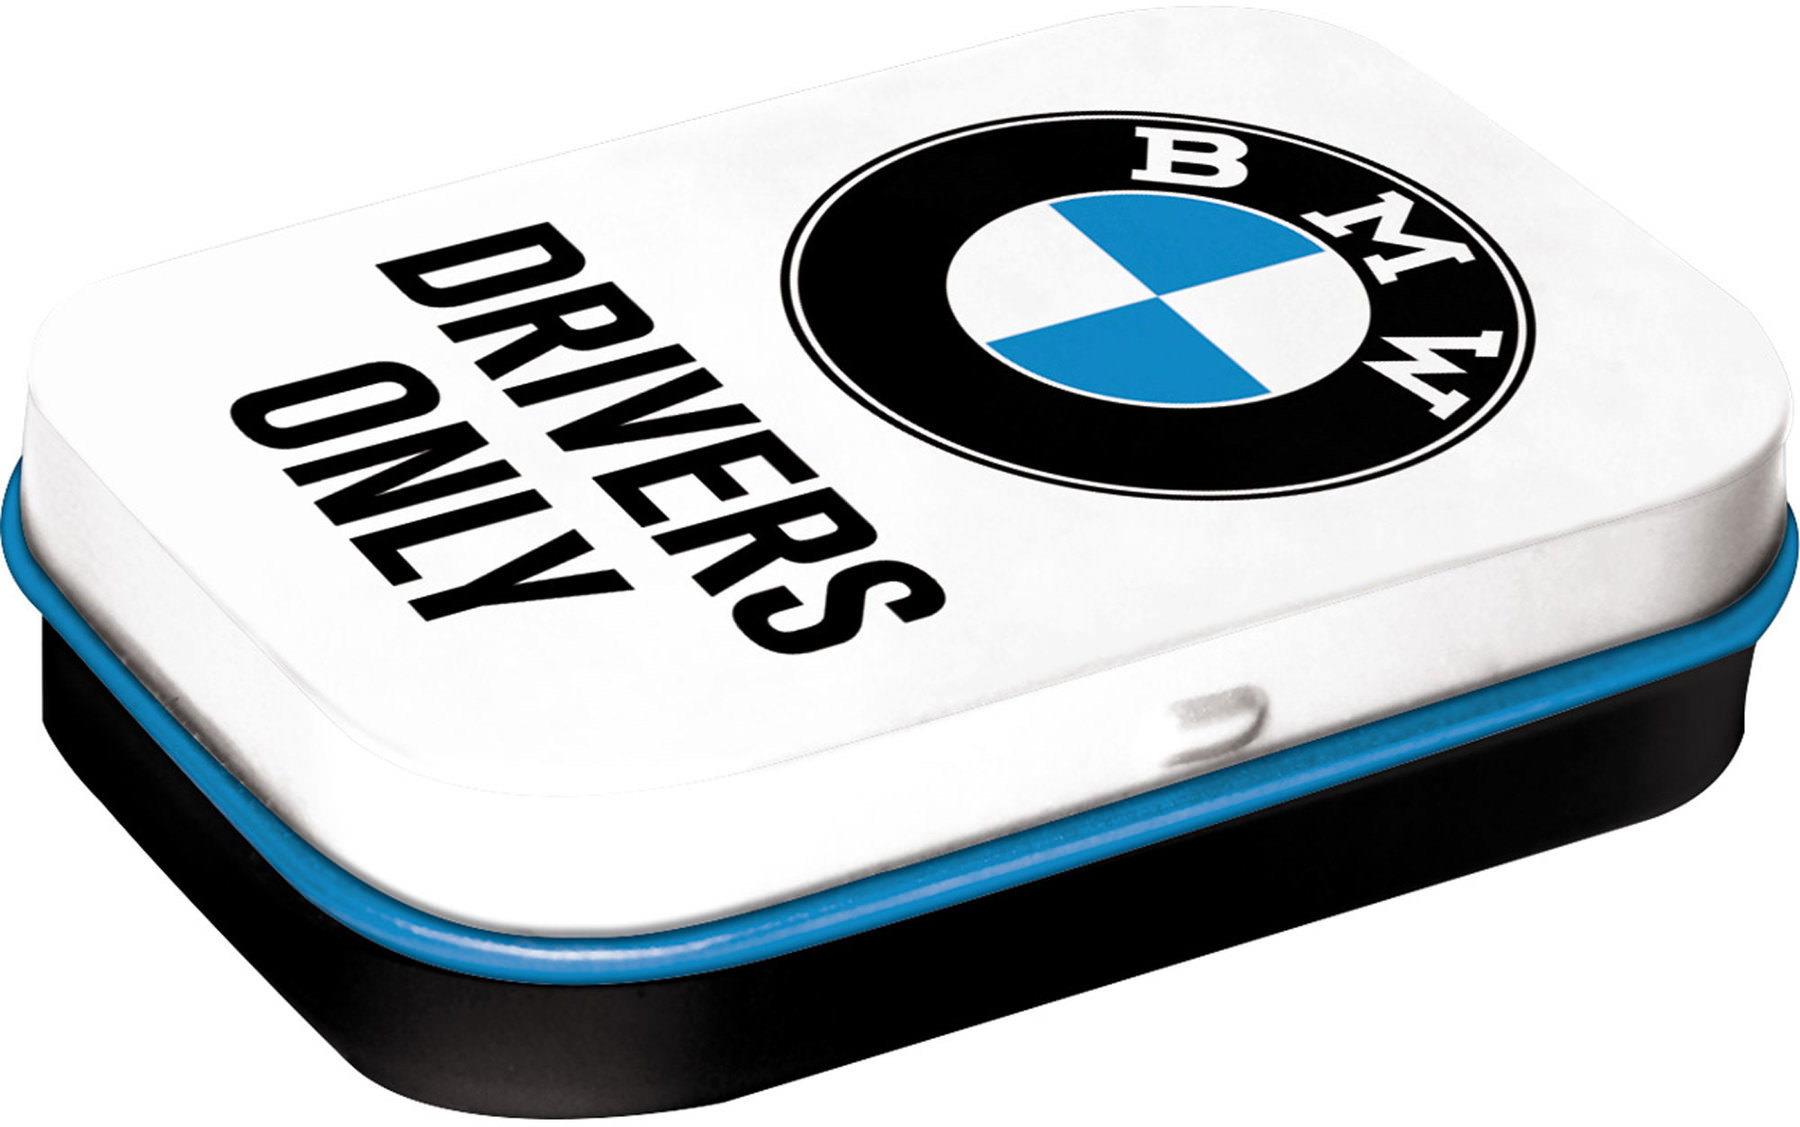 【BMW】Pill Box "DRIVERS ONLY" 金屬盒